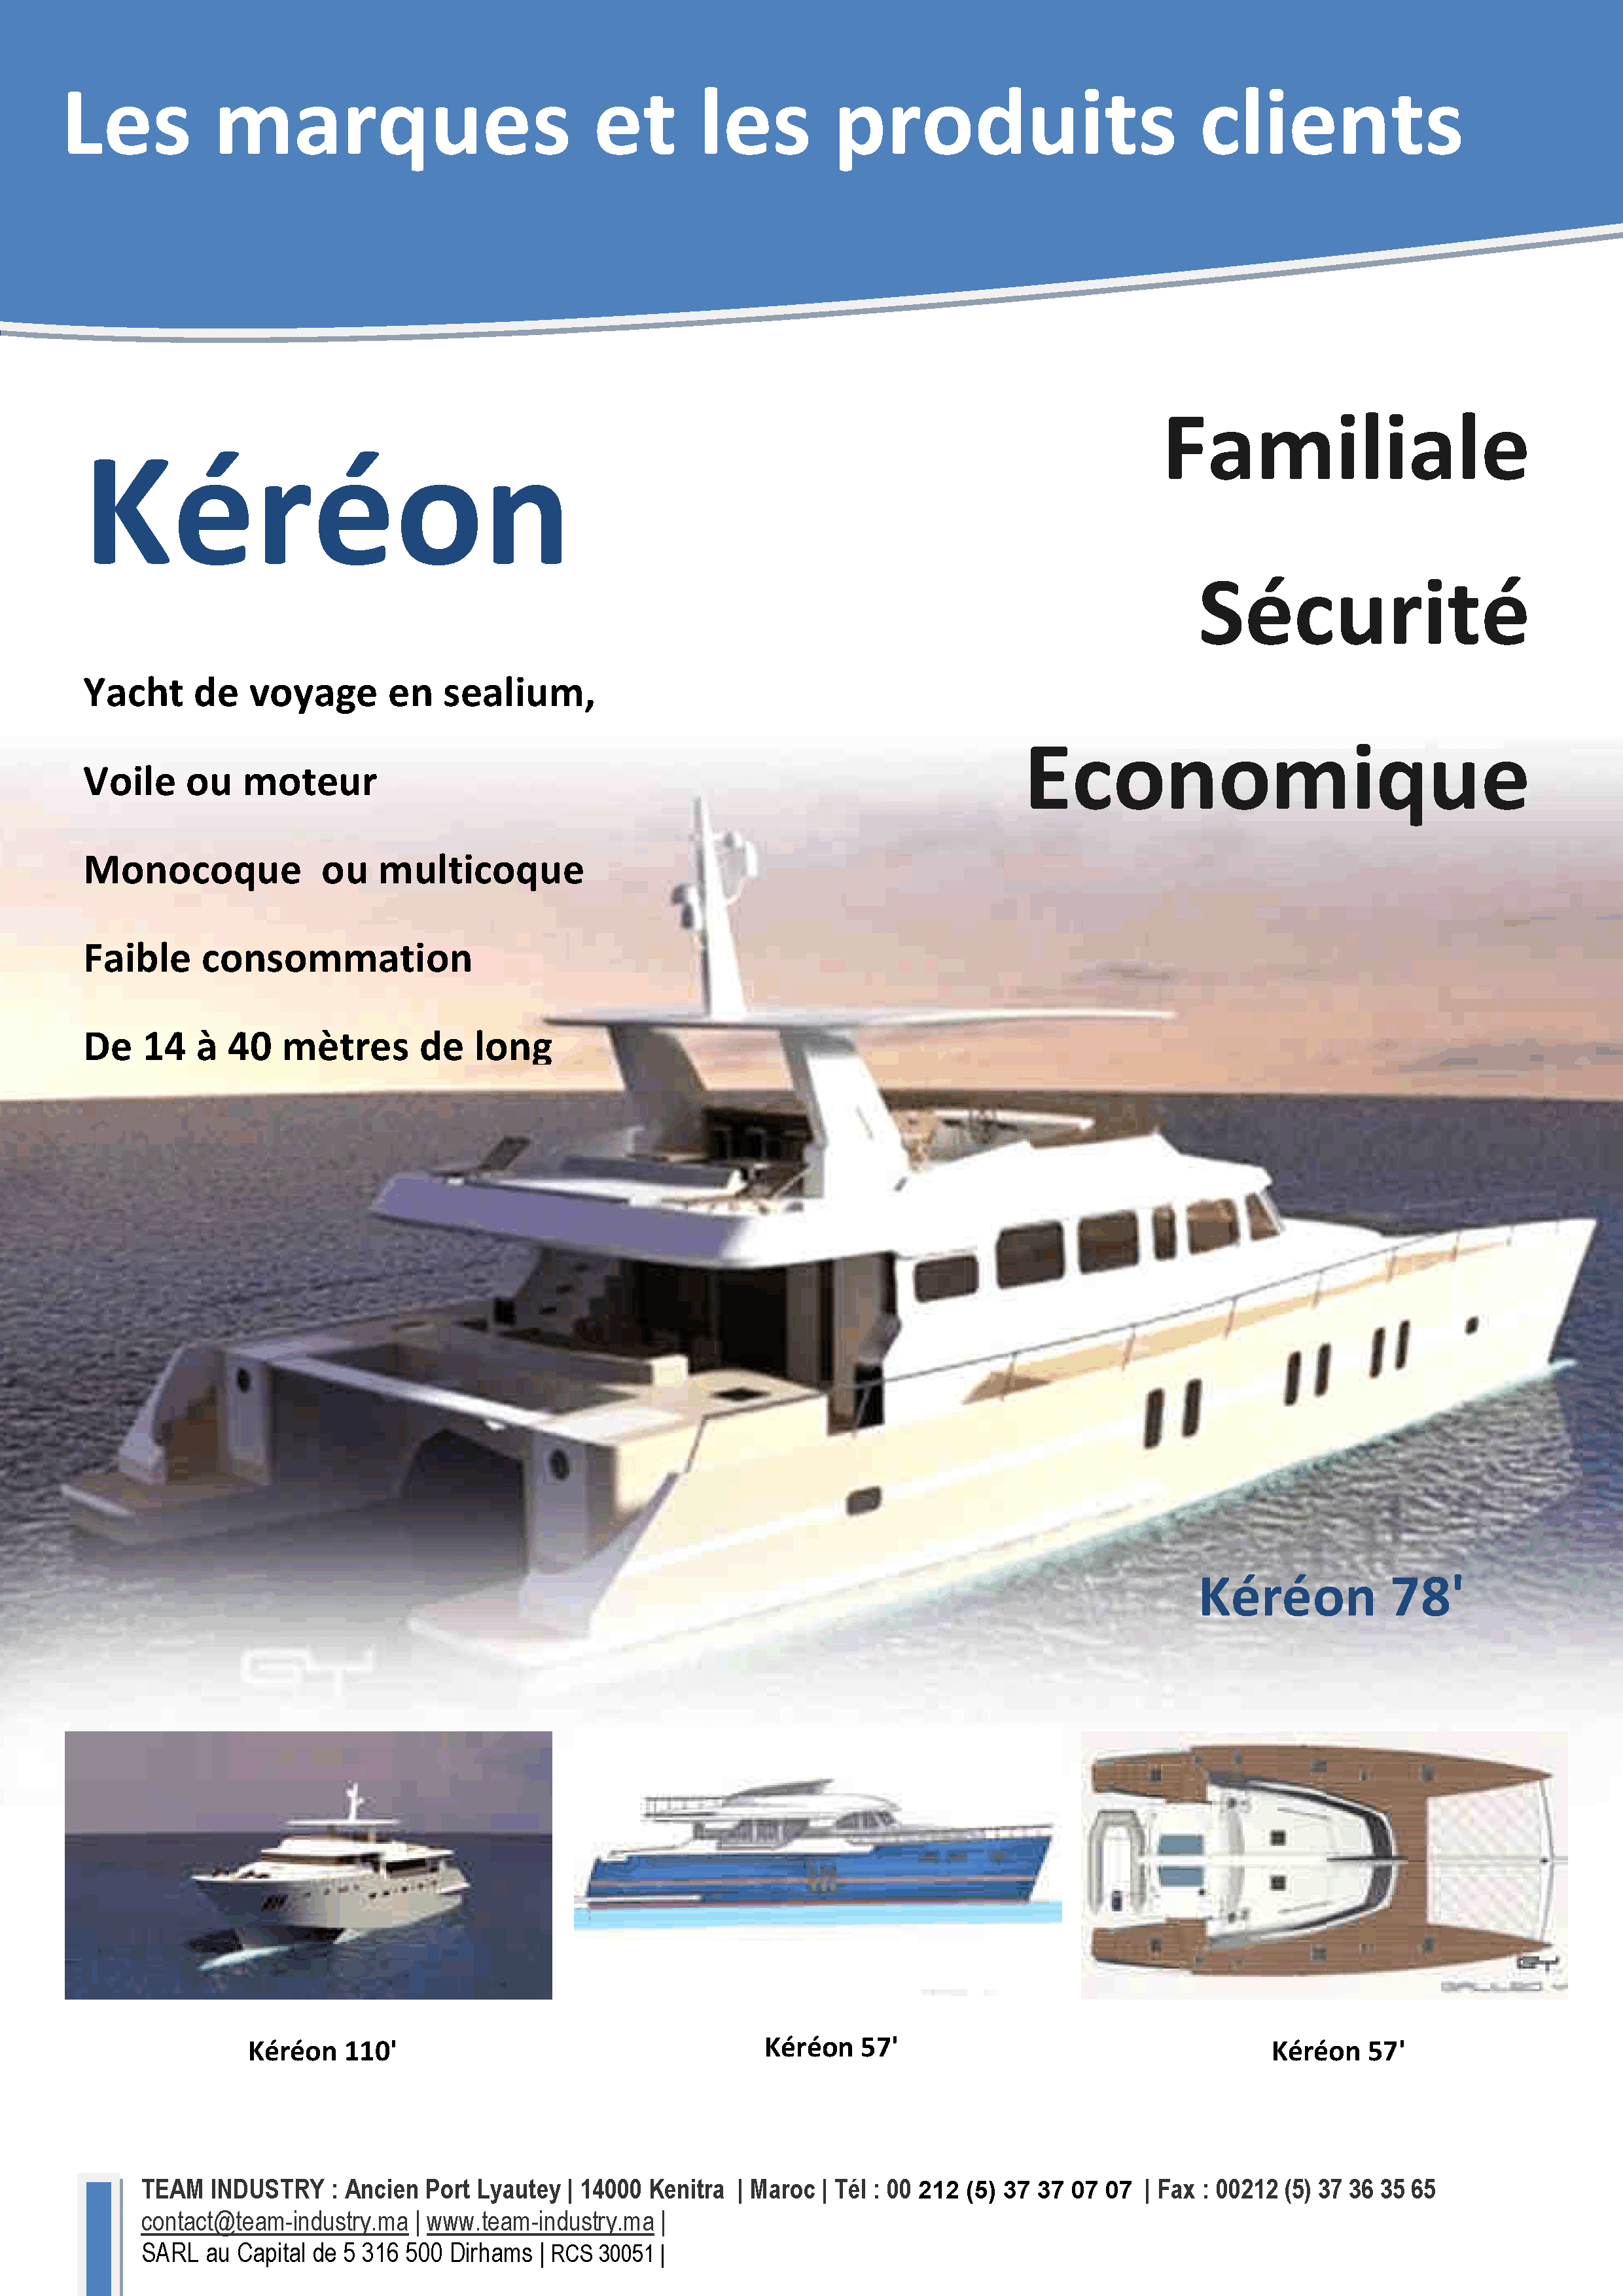 Présentation Kéréon yacht - groupe Simon, Genève